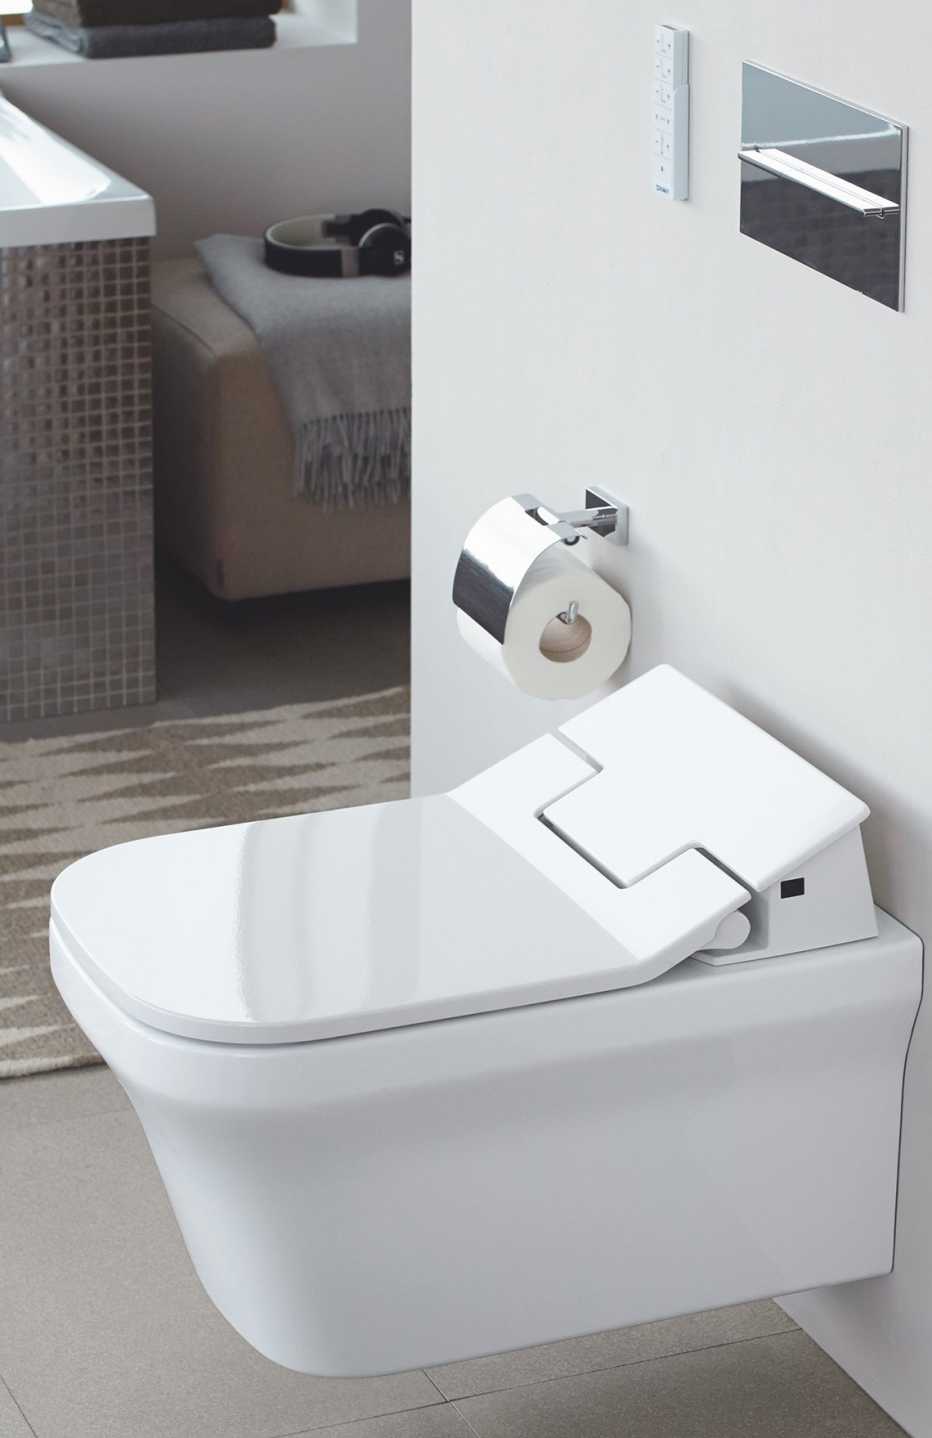 A wall-hung bidet toilet can be set at varying heights.